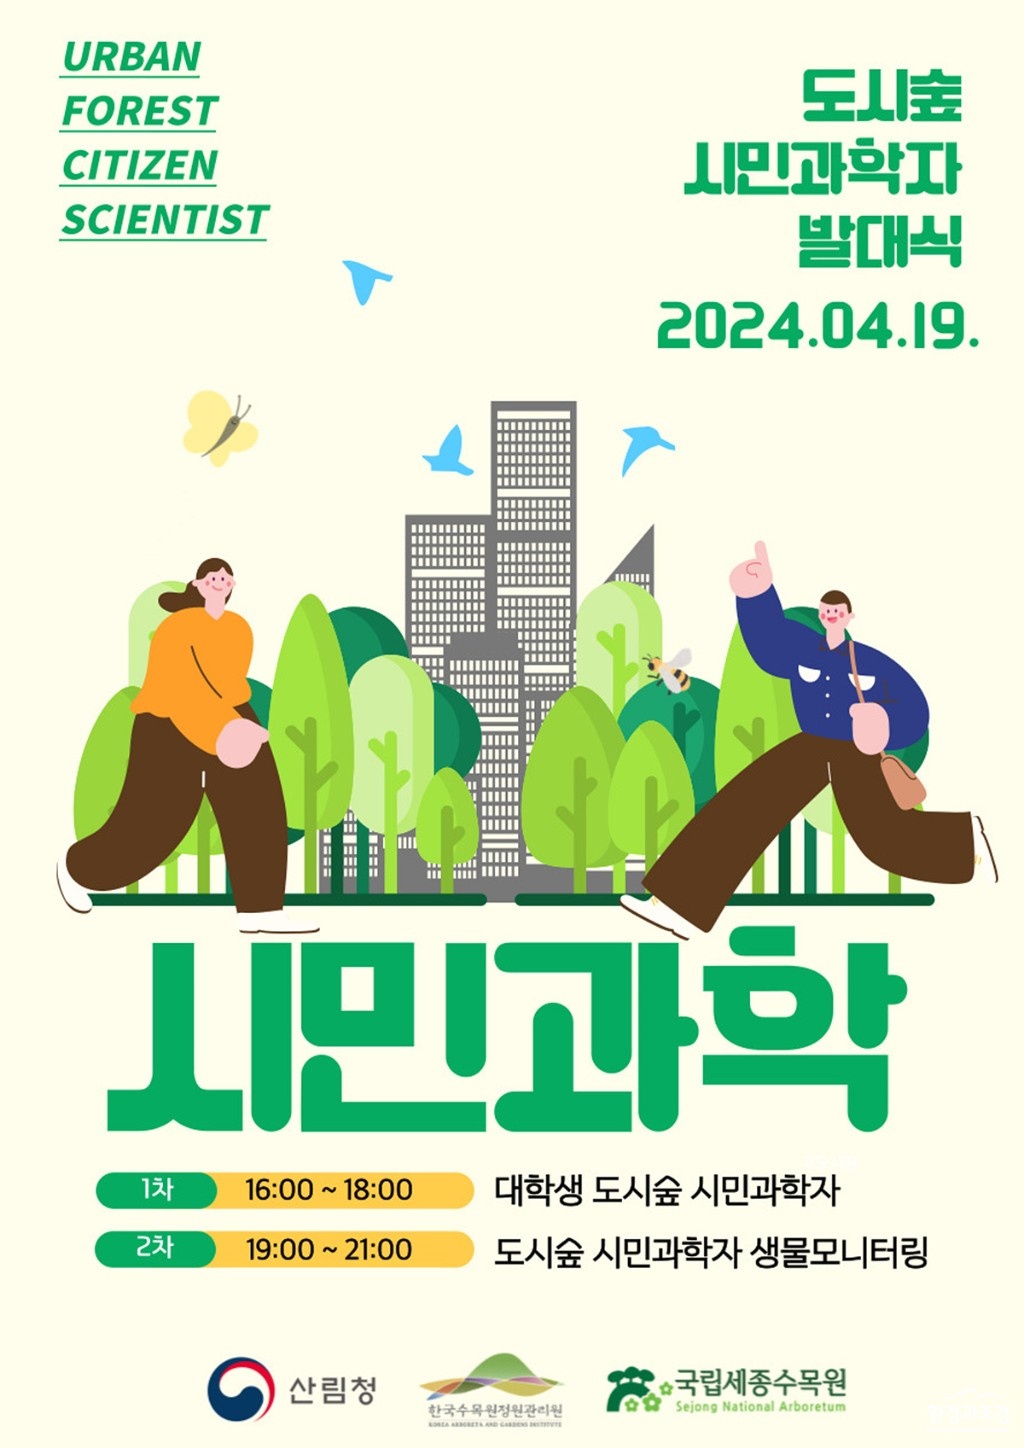 1. 국립세종수목원에서 진행하는 ‘도시숲 시민과학자’ 포스터.jpg